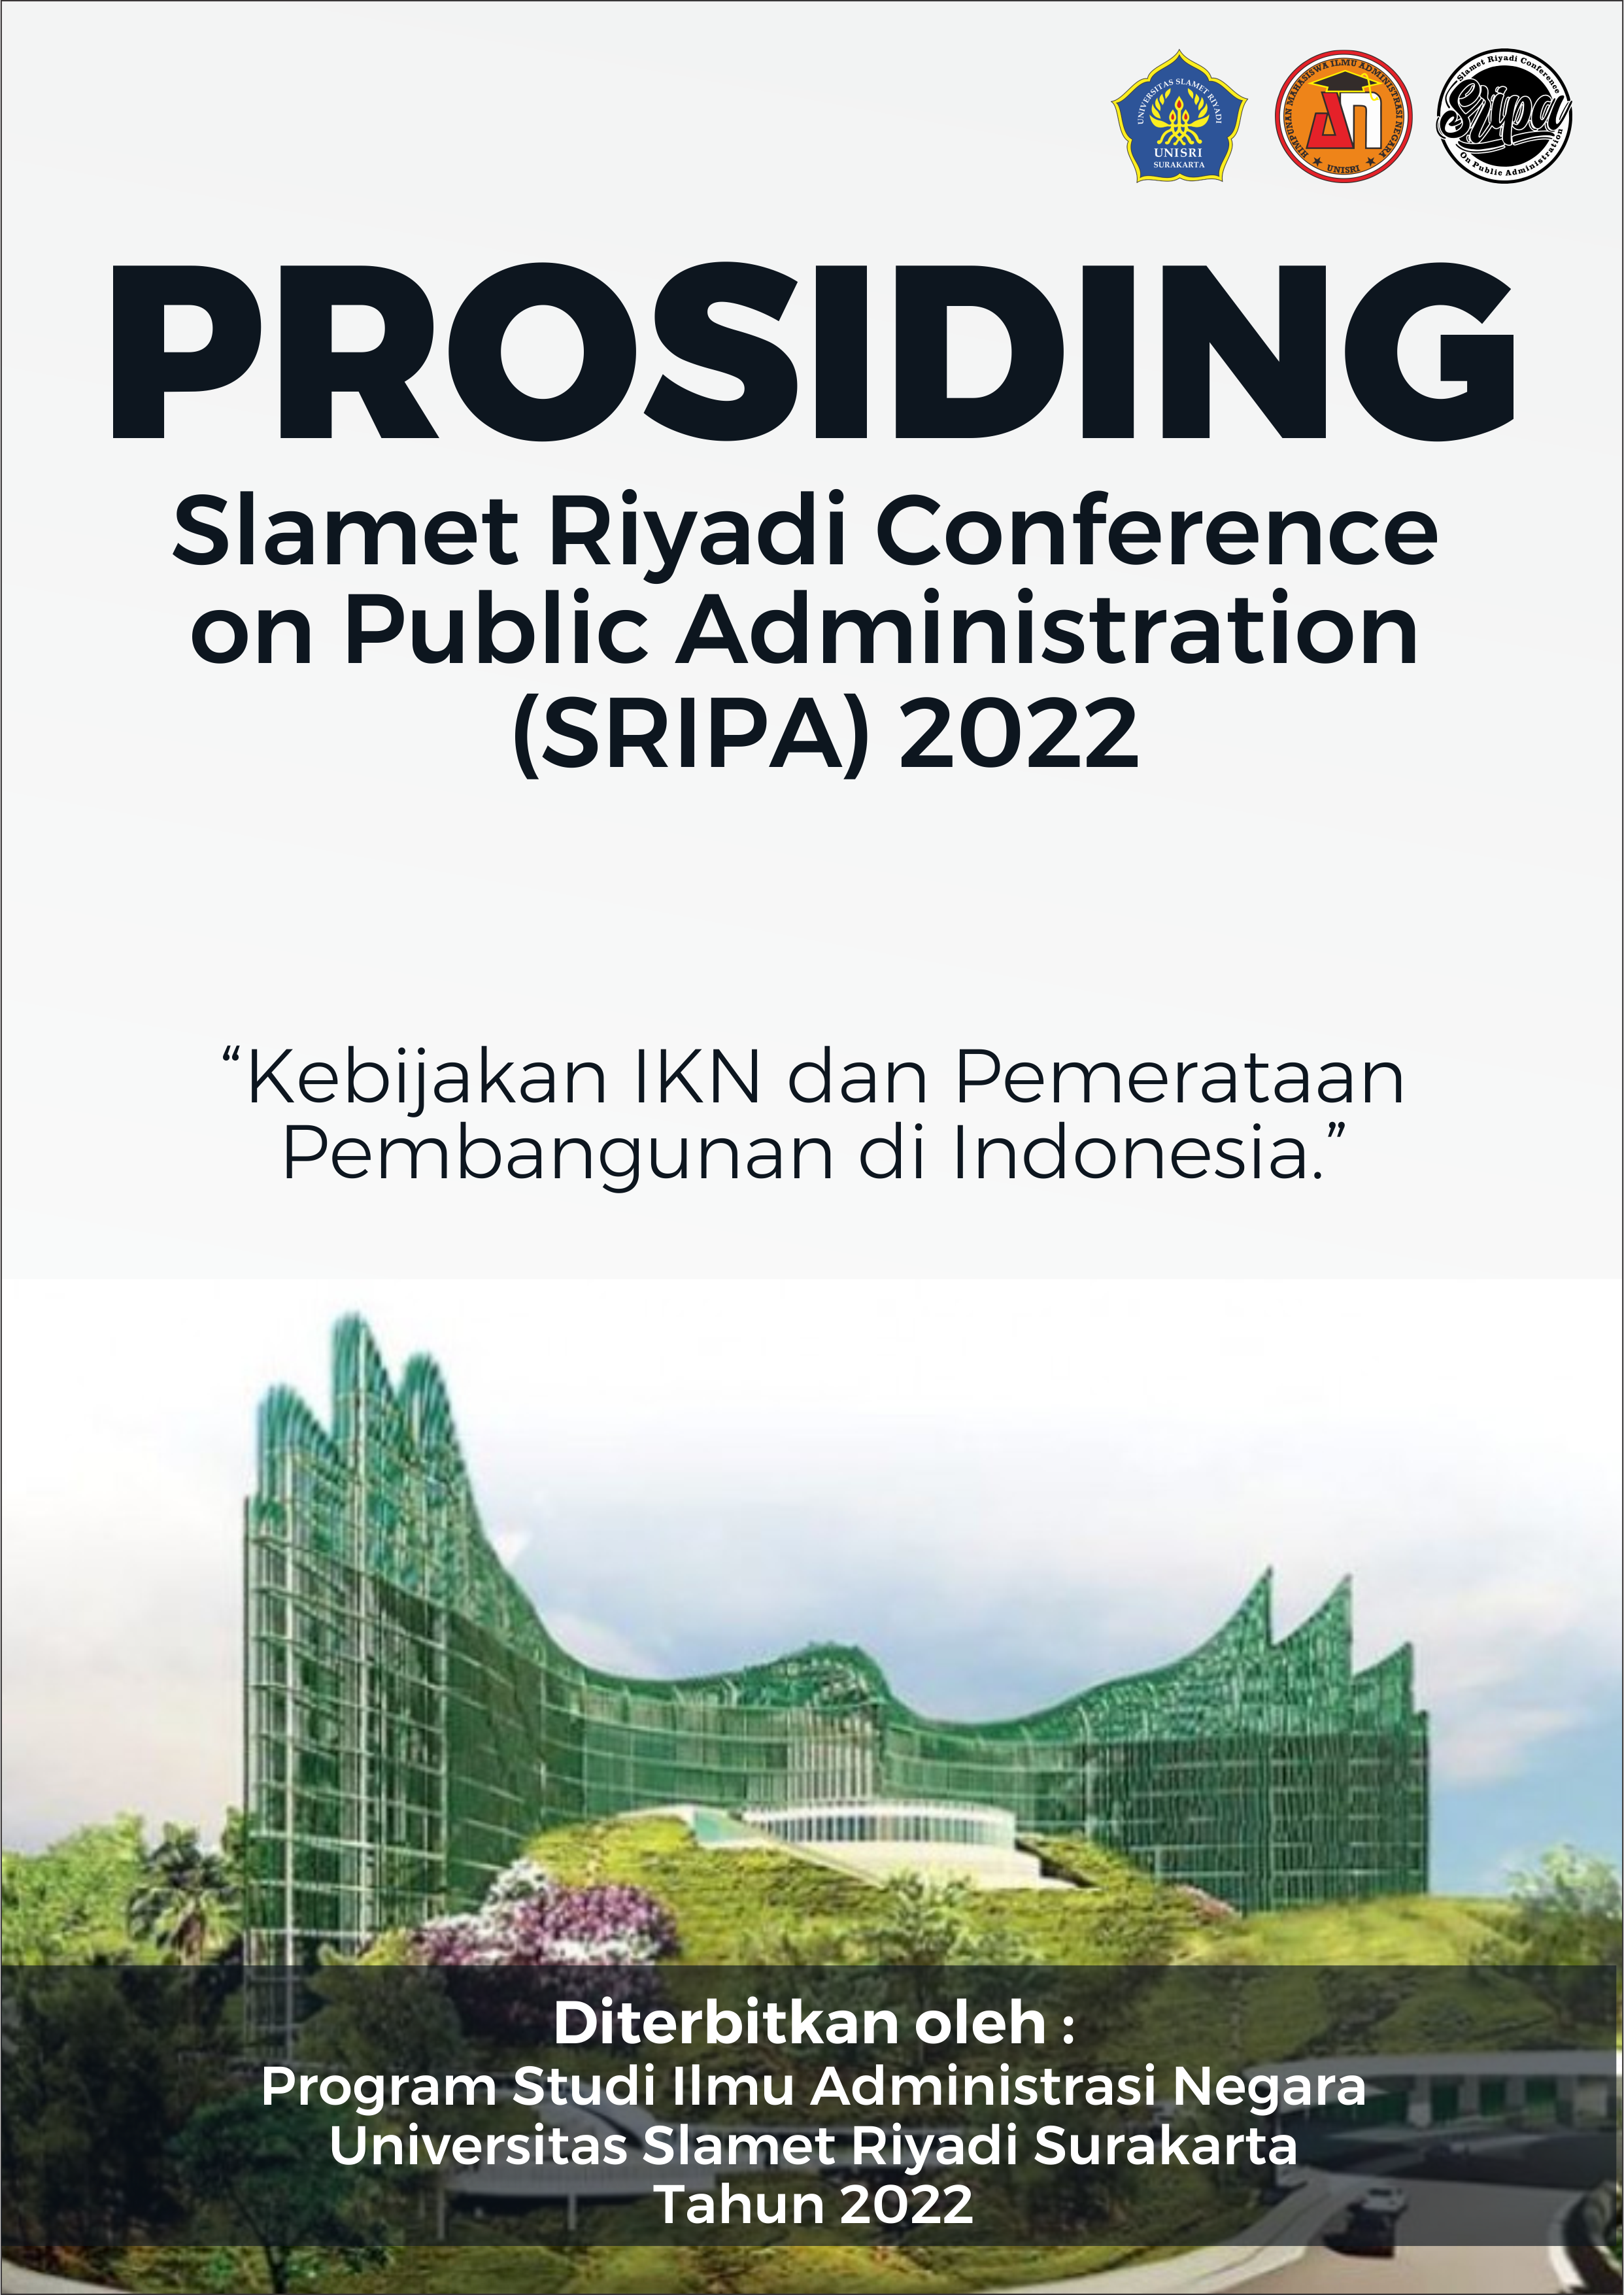 					View Vol. 4 No. 1 (2022): Prosiding Konferensi Slamet Riyadi tentang Administrasi Negara (SRIPA) 2022
				